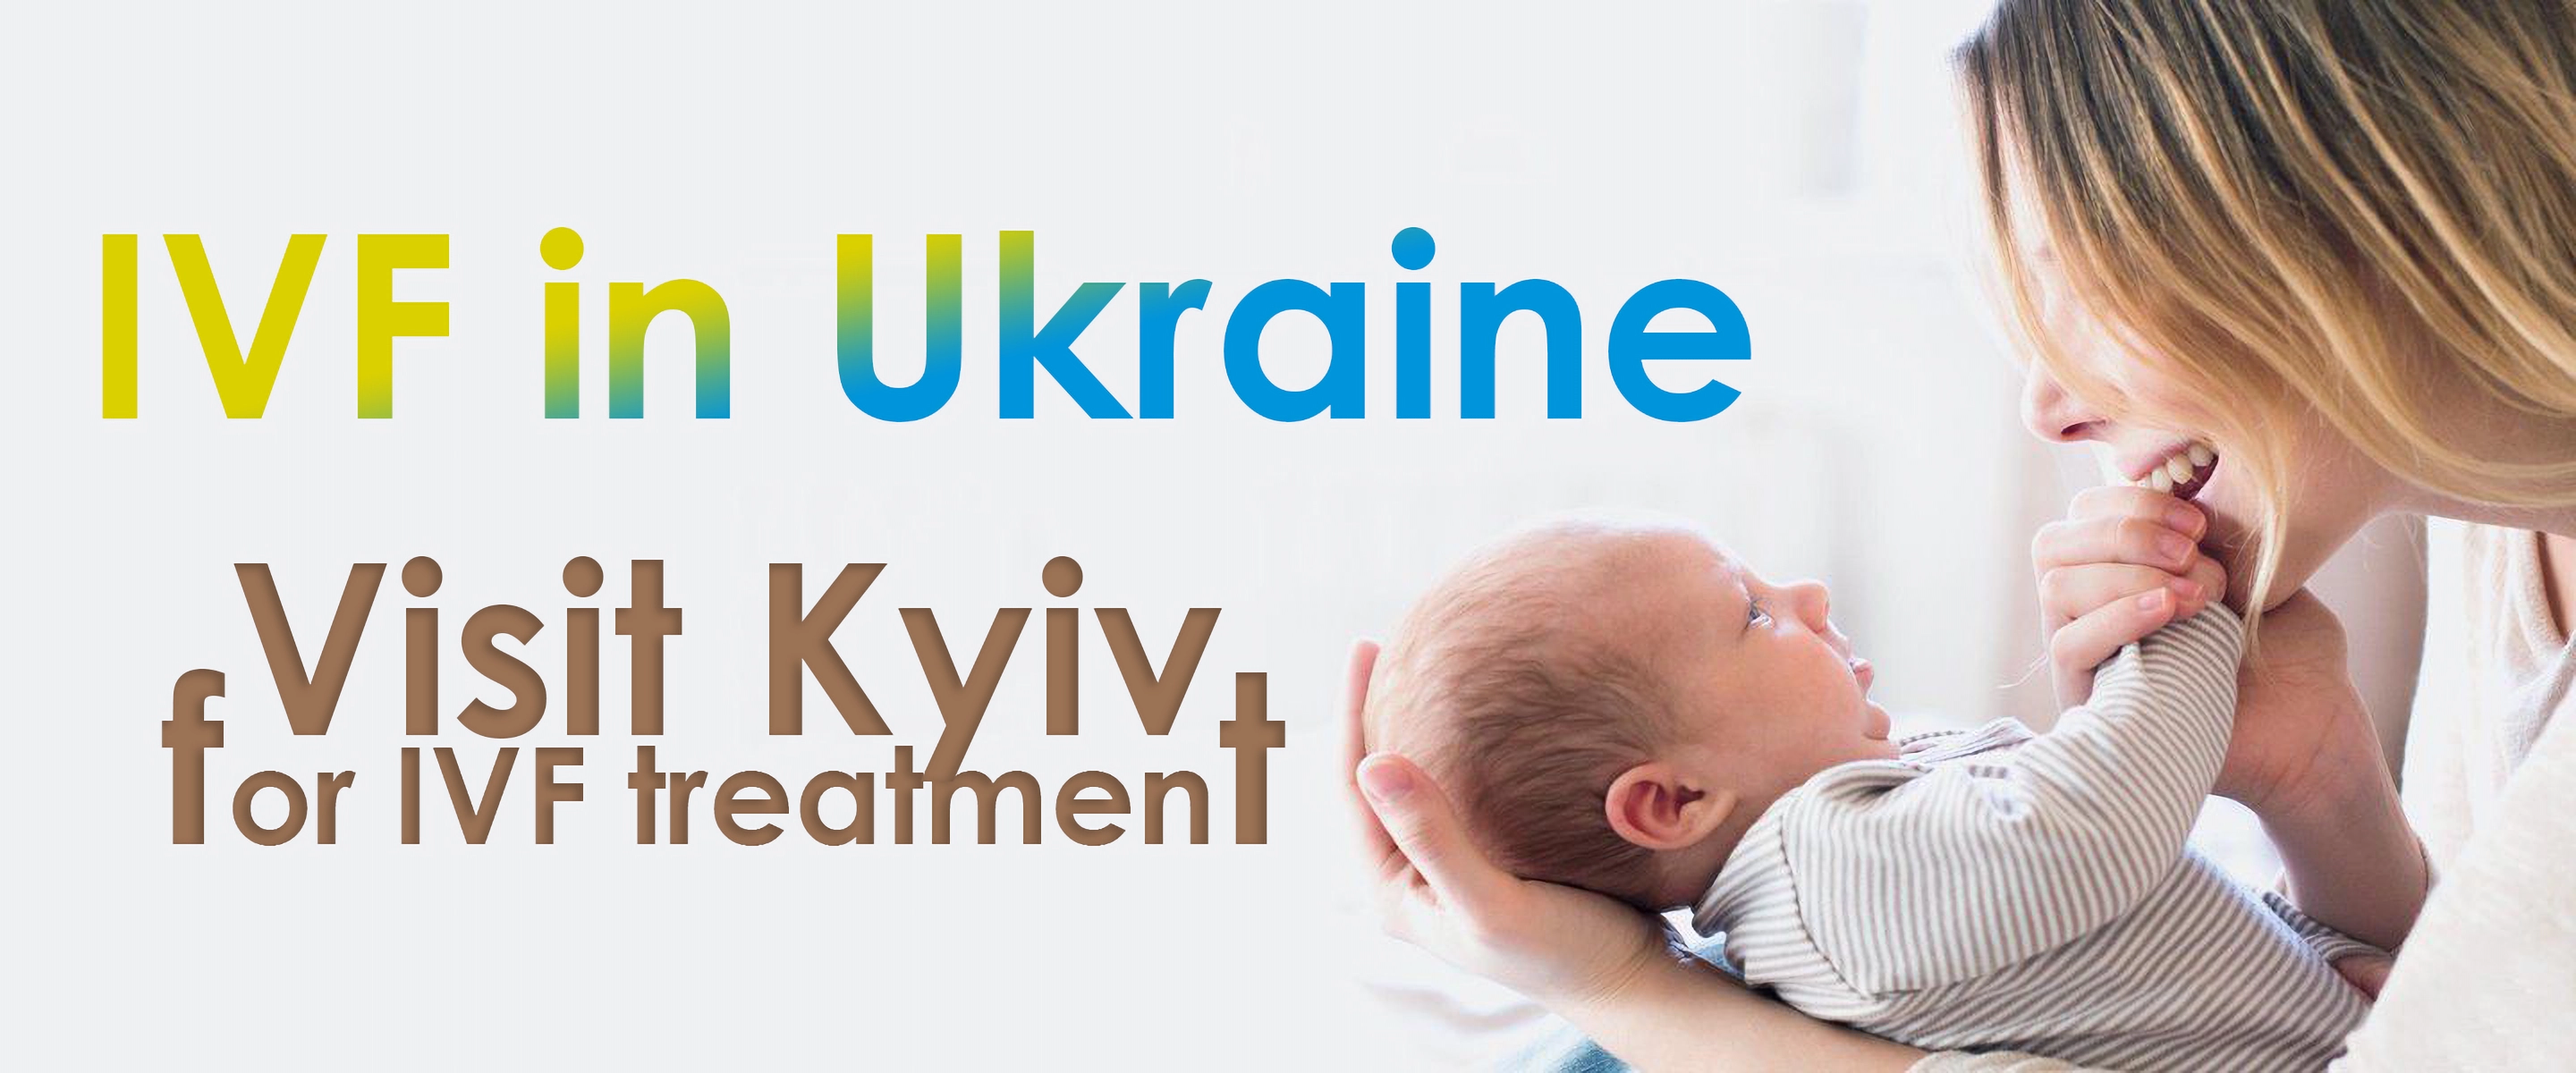 Odwiedź Kijów w celu podjęcia leczenia IVF